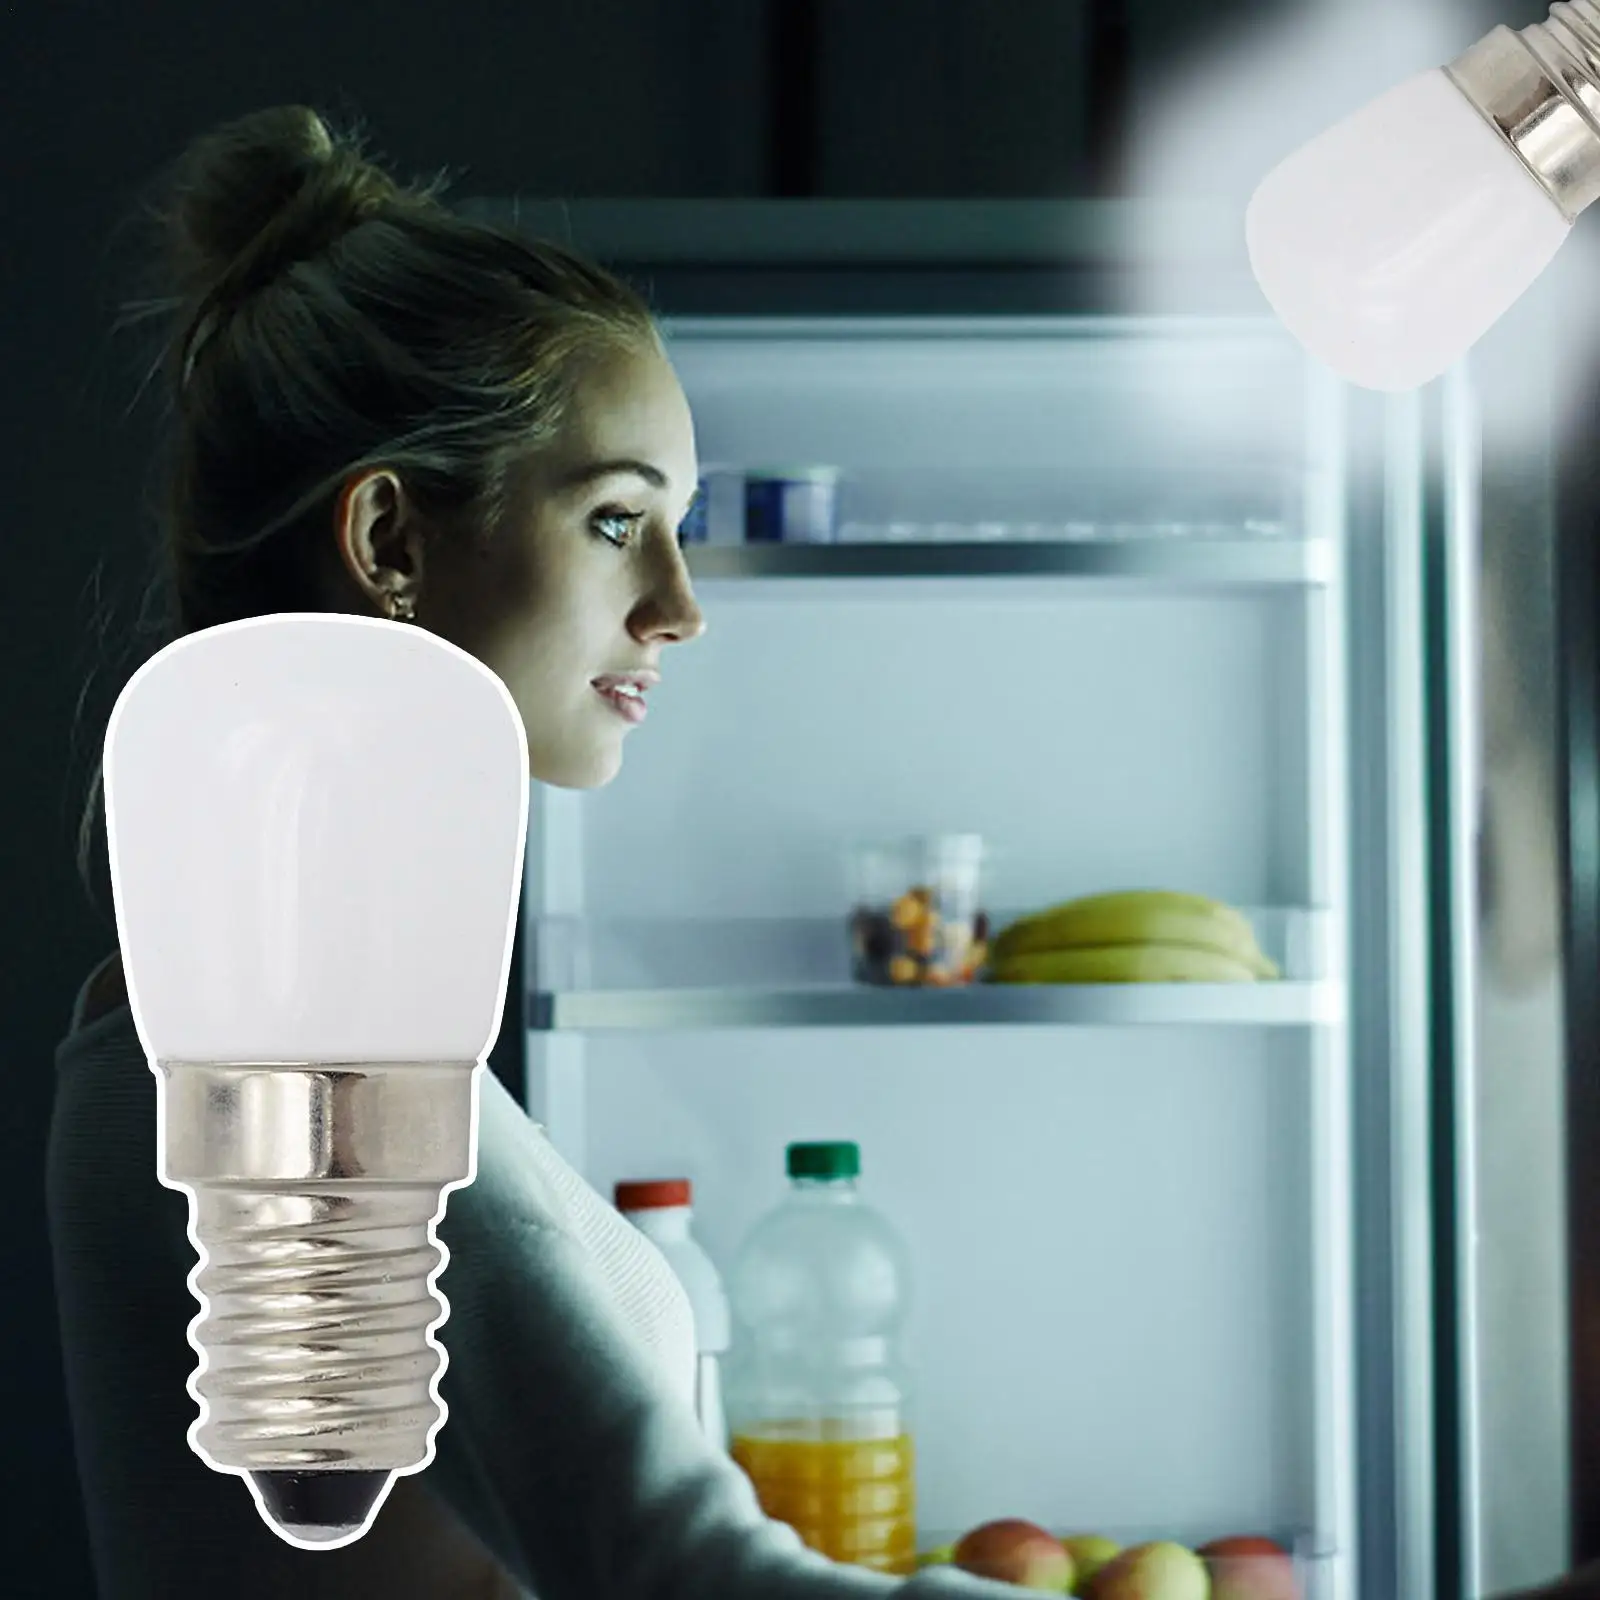 

3W E14 LED Fridge Light Bulb Refrigerator Corn Bulb AC 220V LED Lamp White/Warm White SMD2835 Replace Halogen Light